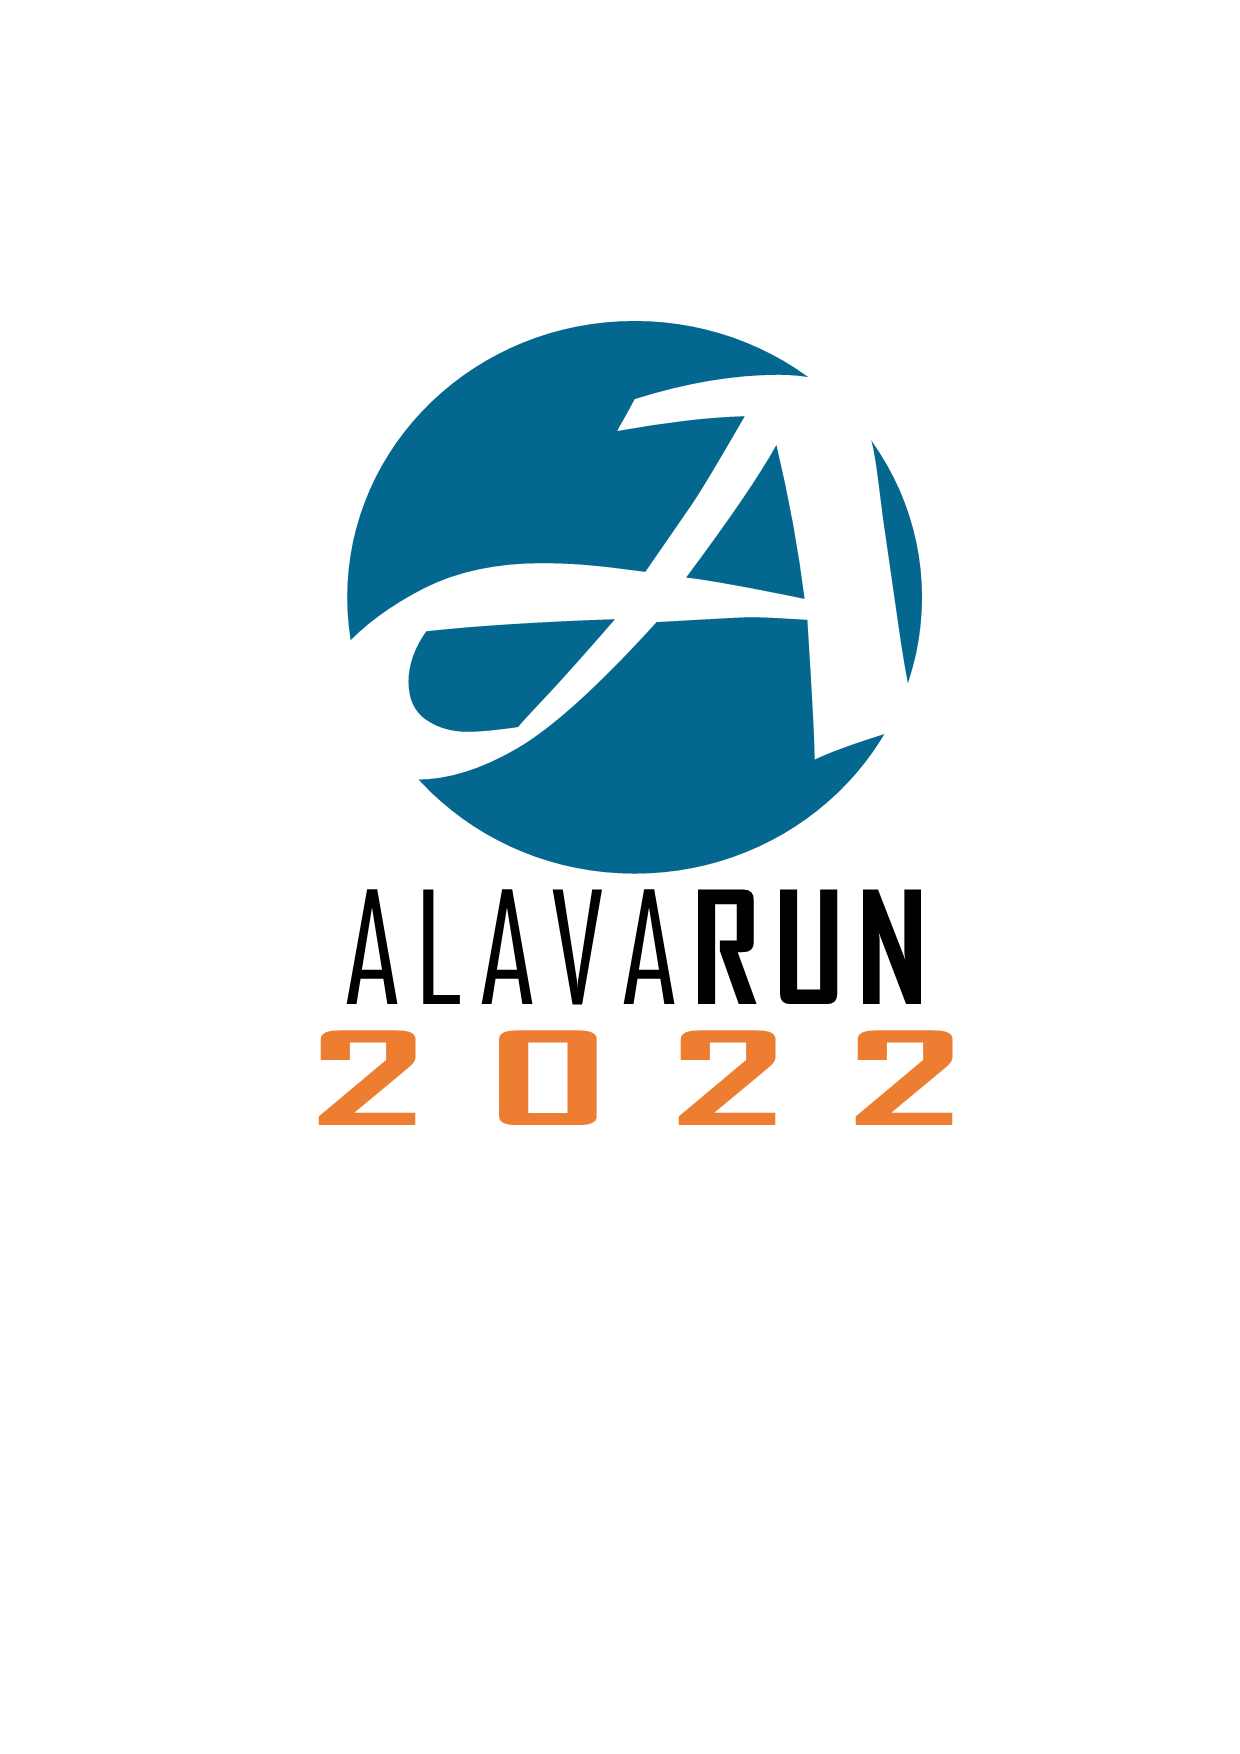 Logo, jossa sinisessa ympyrässä A-kirjain jonka alapuolella teksti AlavaRUN 2022